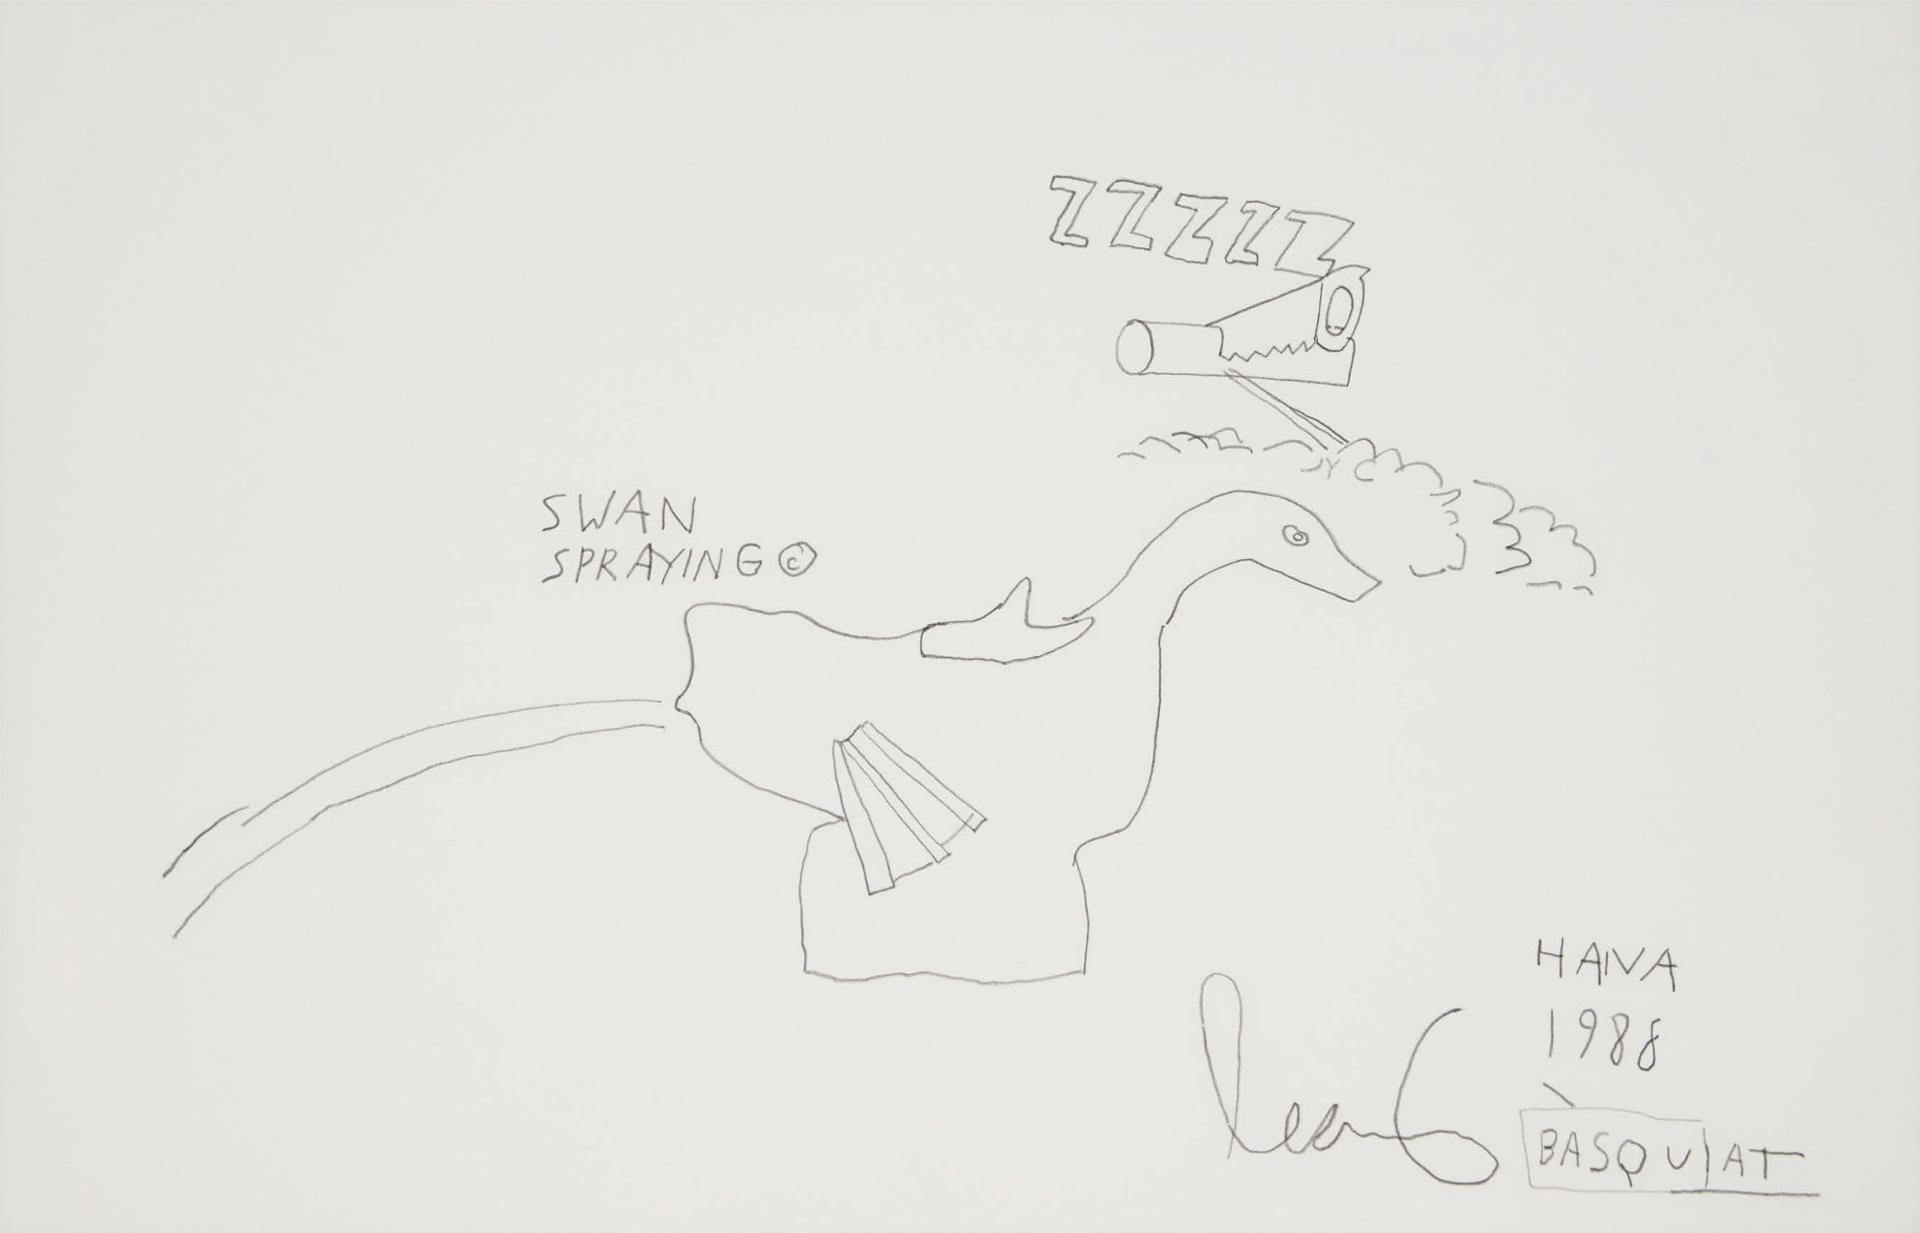 Jean-Michel Basquiat - Swan Spraying, 1988